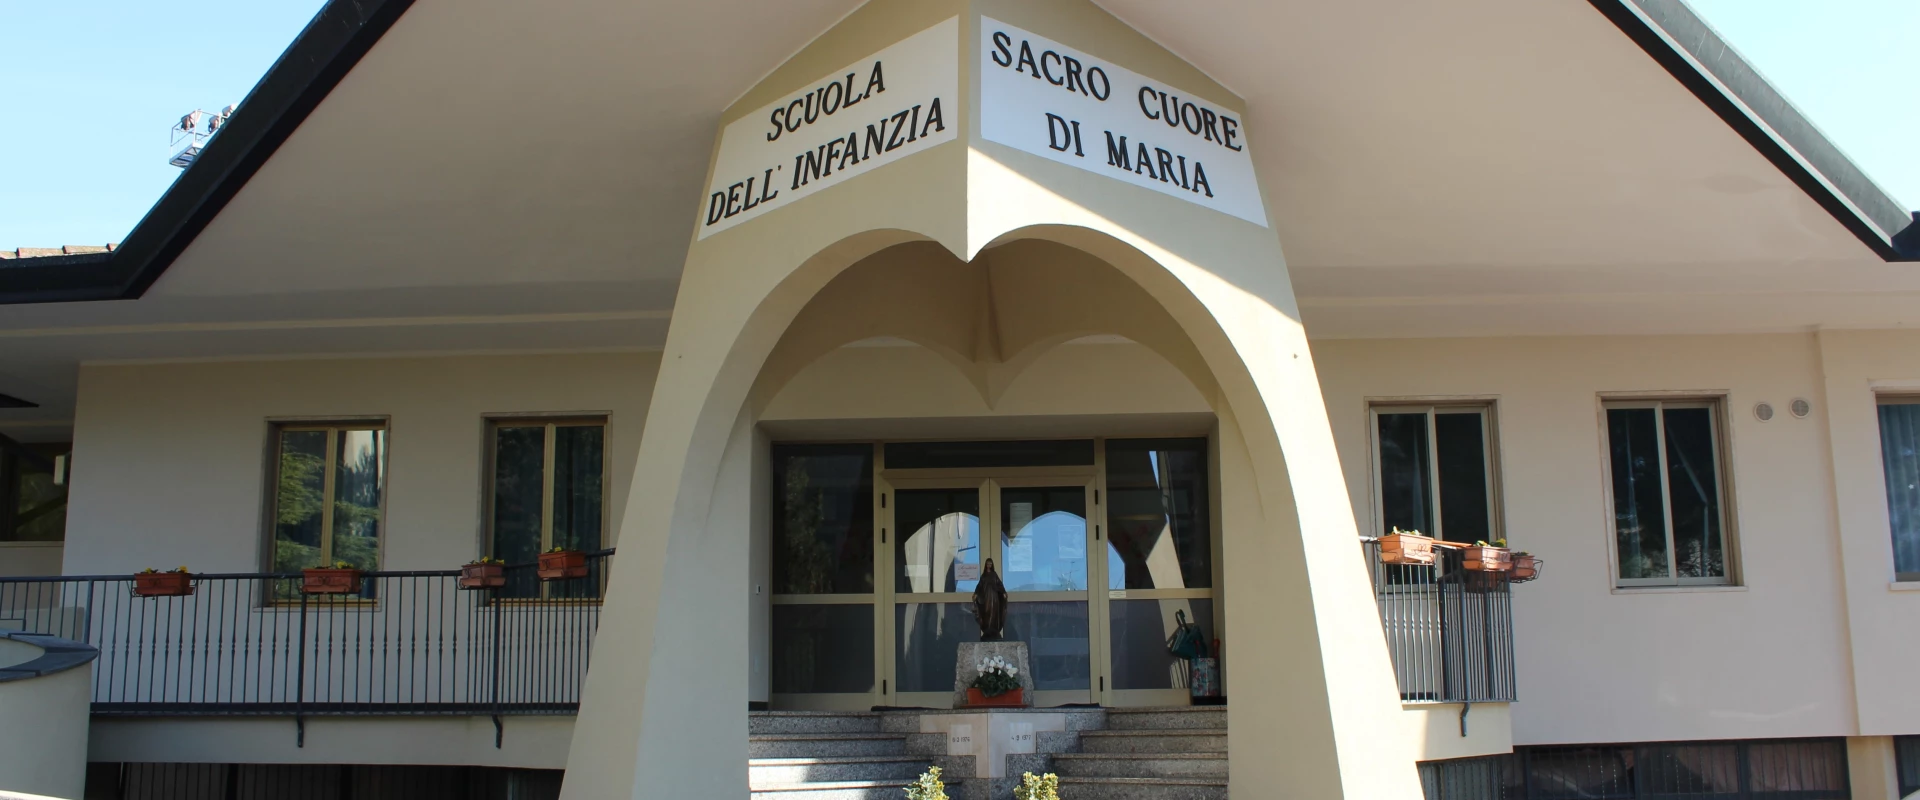 Scuola dell'infanzia Sacro Cuore di Maria